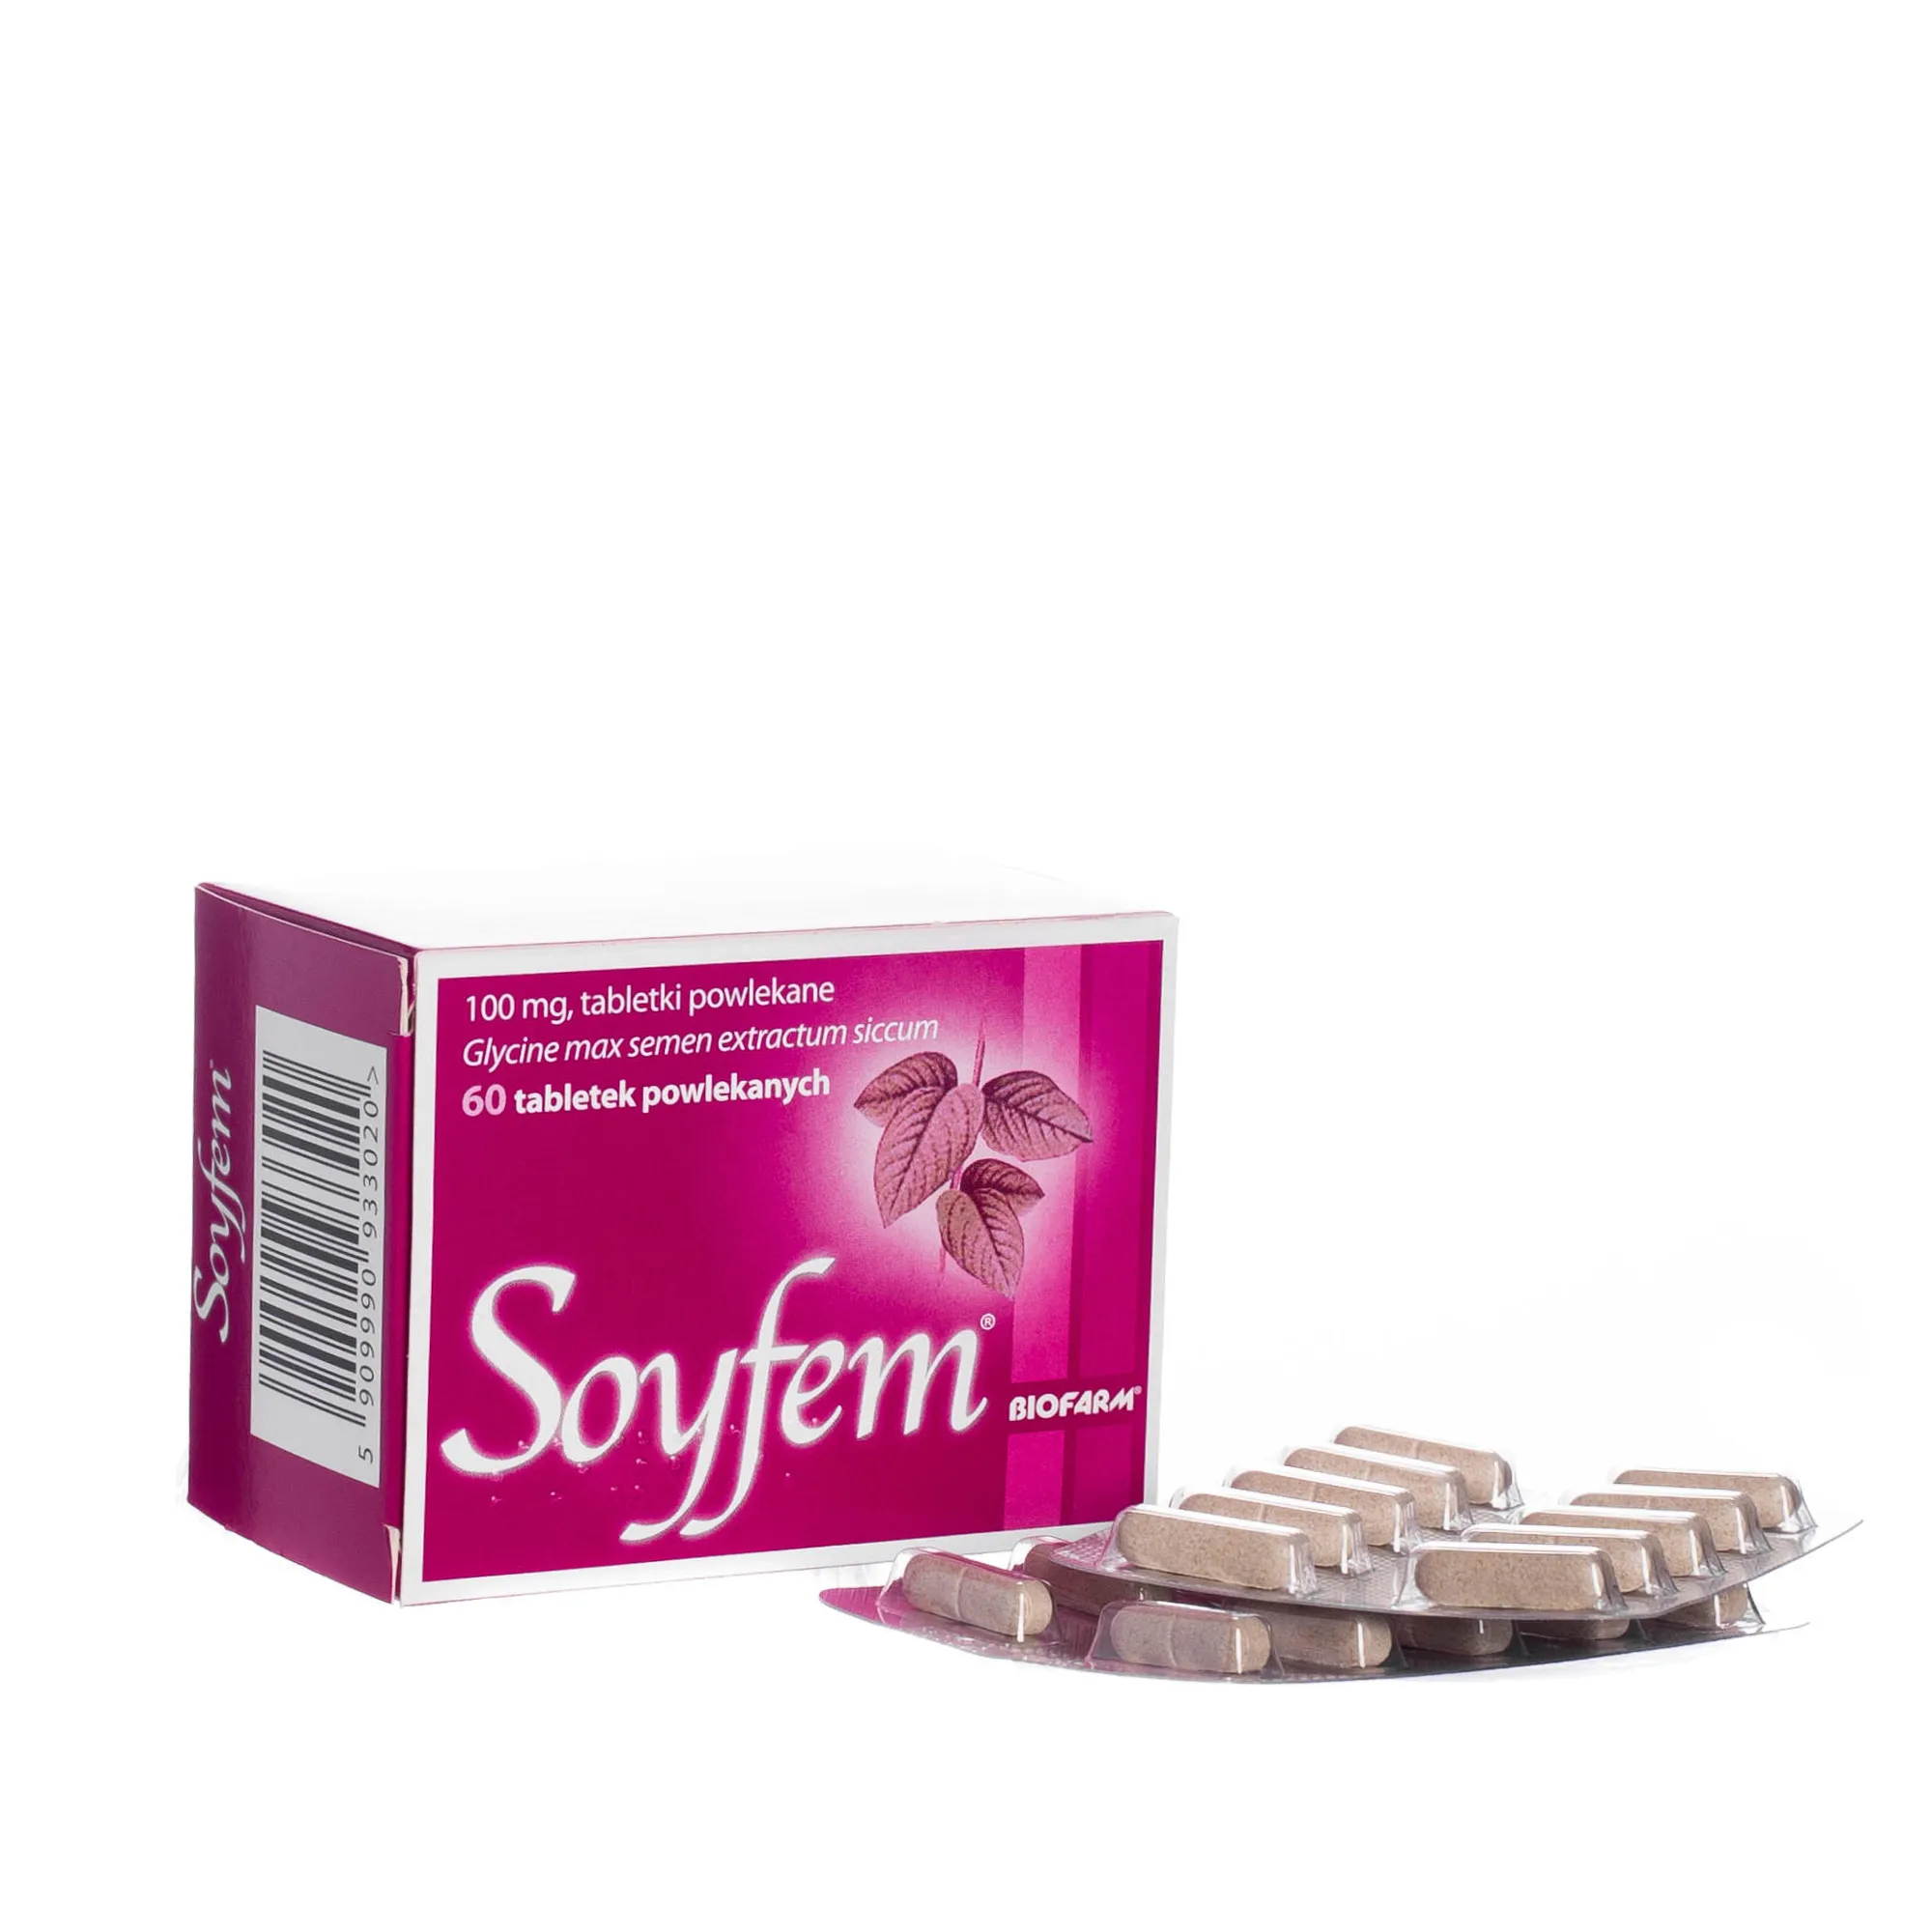 Soyfem, 100 mg, 60 tabletek powlekanych